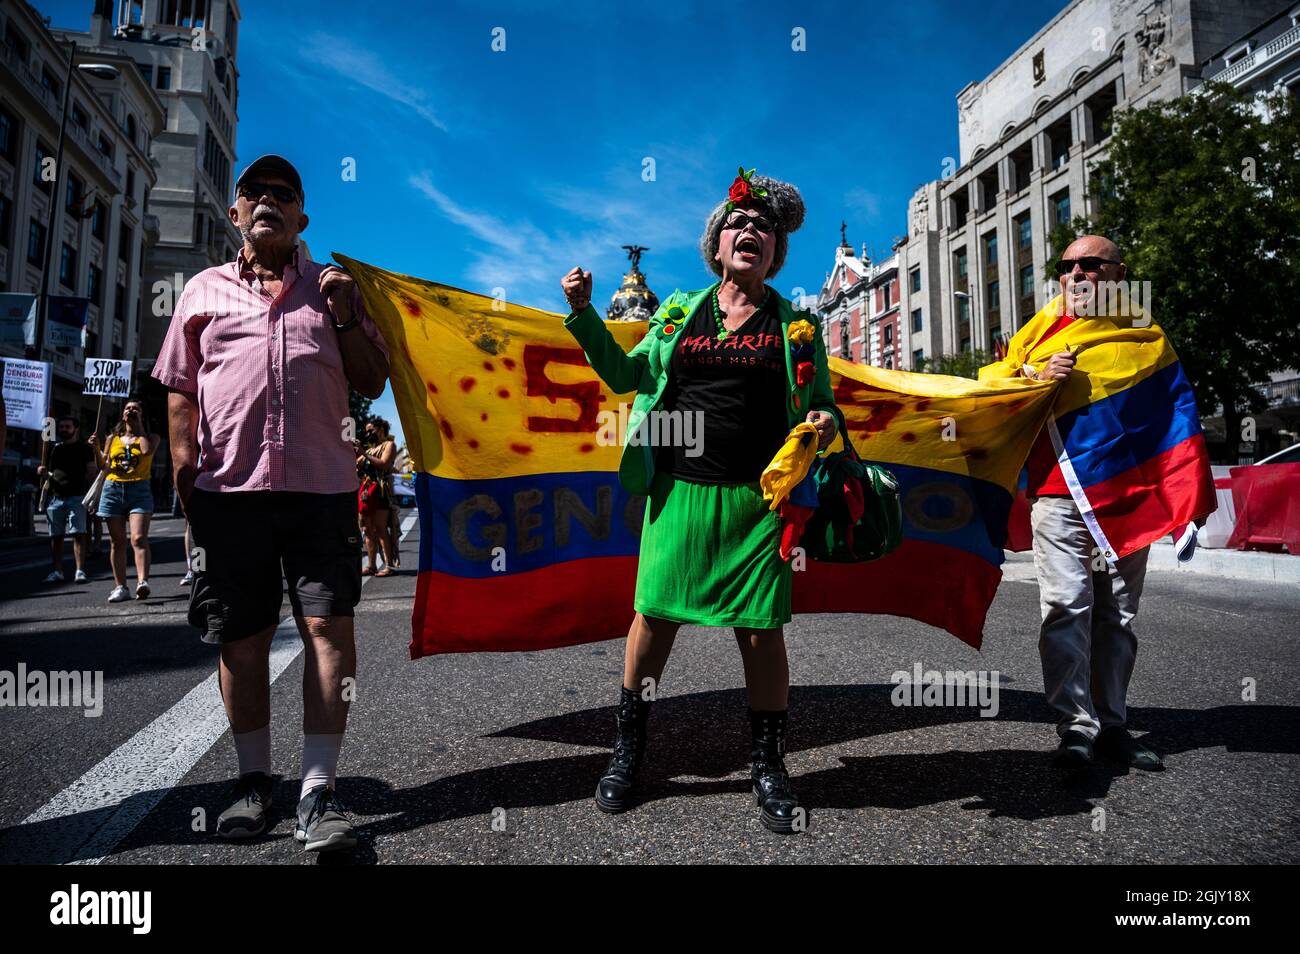 Madrid, Spanien. September 2021. Demonstranten riefen Slogans während einer Demonstration gegen den Besuch des kolumbianischen Präsidenten Ivan Duque auf der Madrider Buchmesse 2021. Quelle: Marcos del Mazo/Alamy Live News Stockfoto